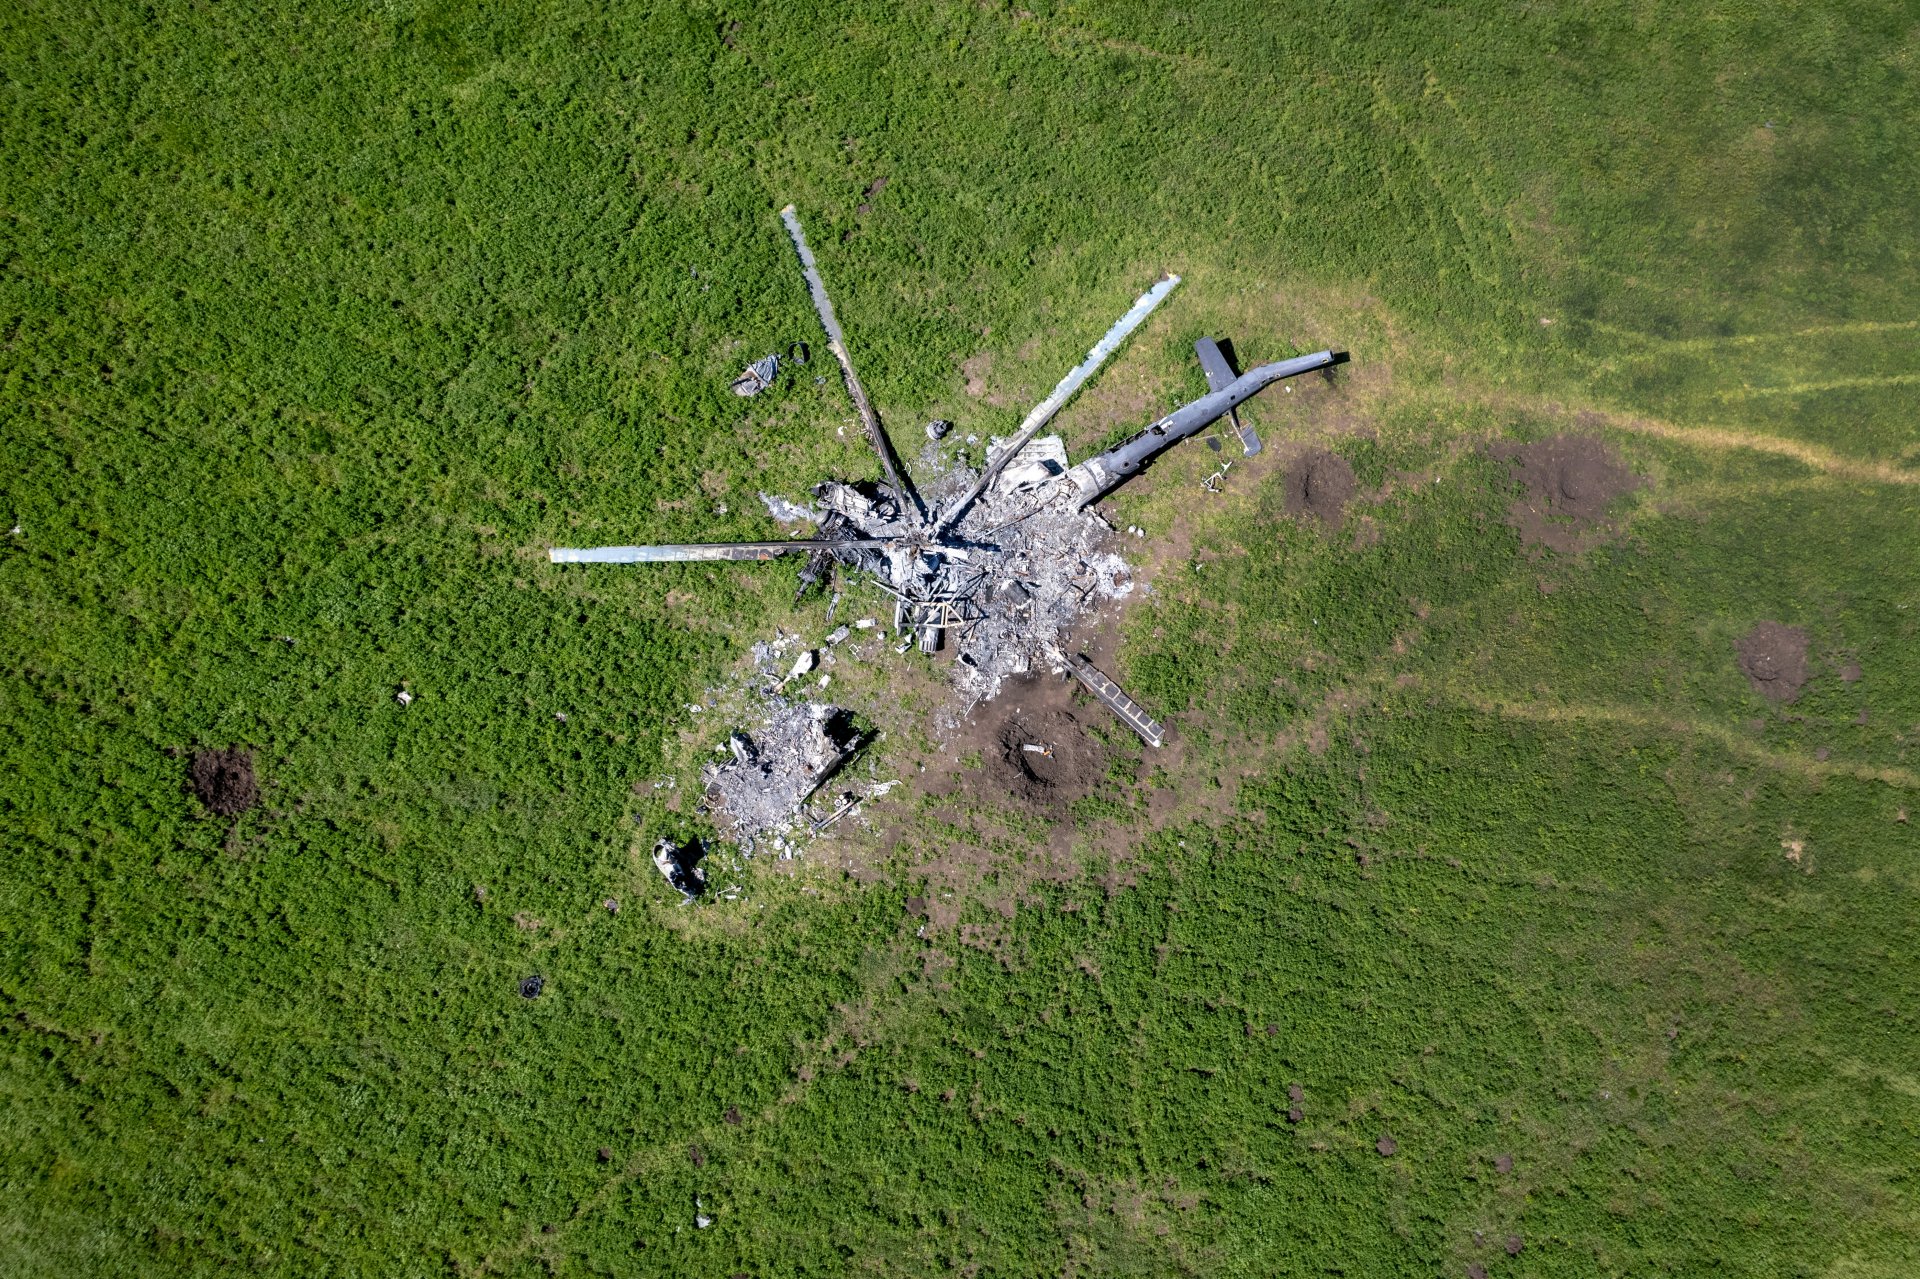  Oстанките на руски хеликоптер лежат в поле, в кратер, образуван от бомба източно от Харков.